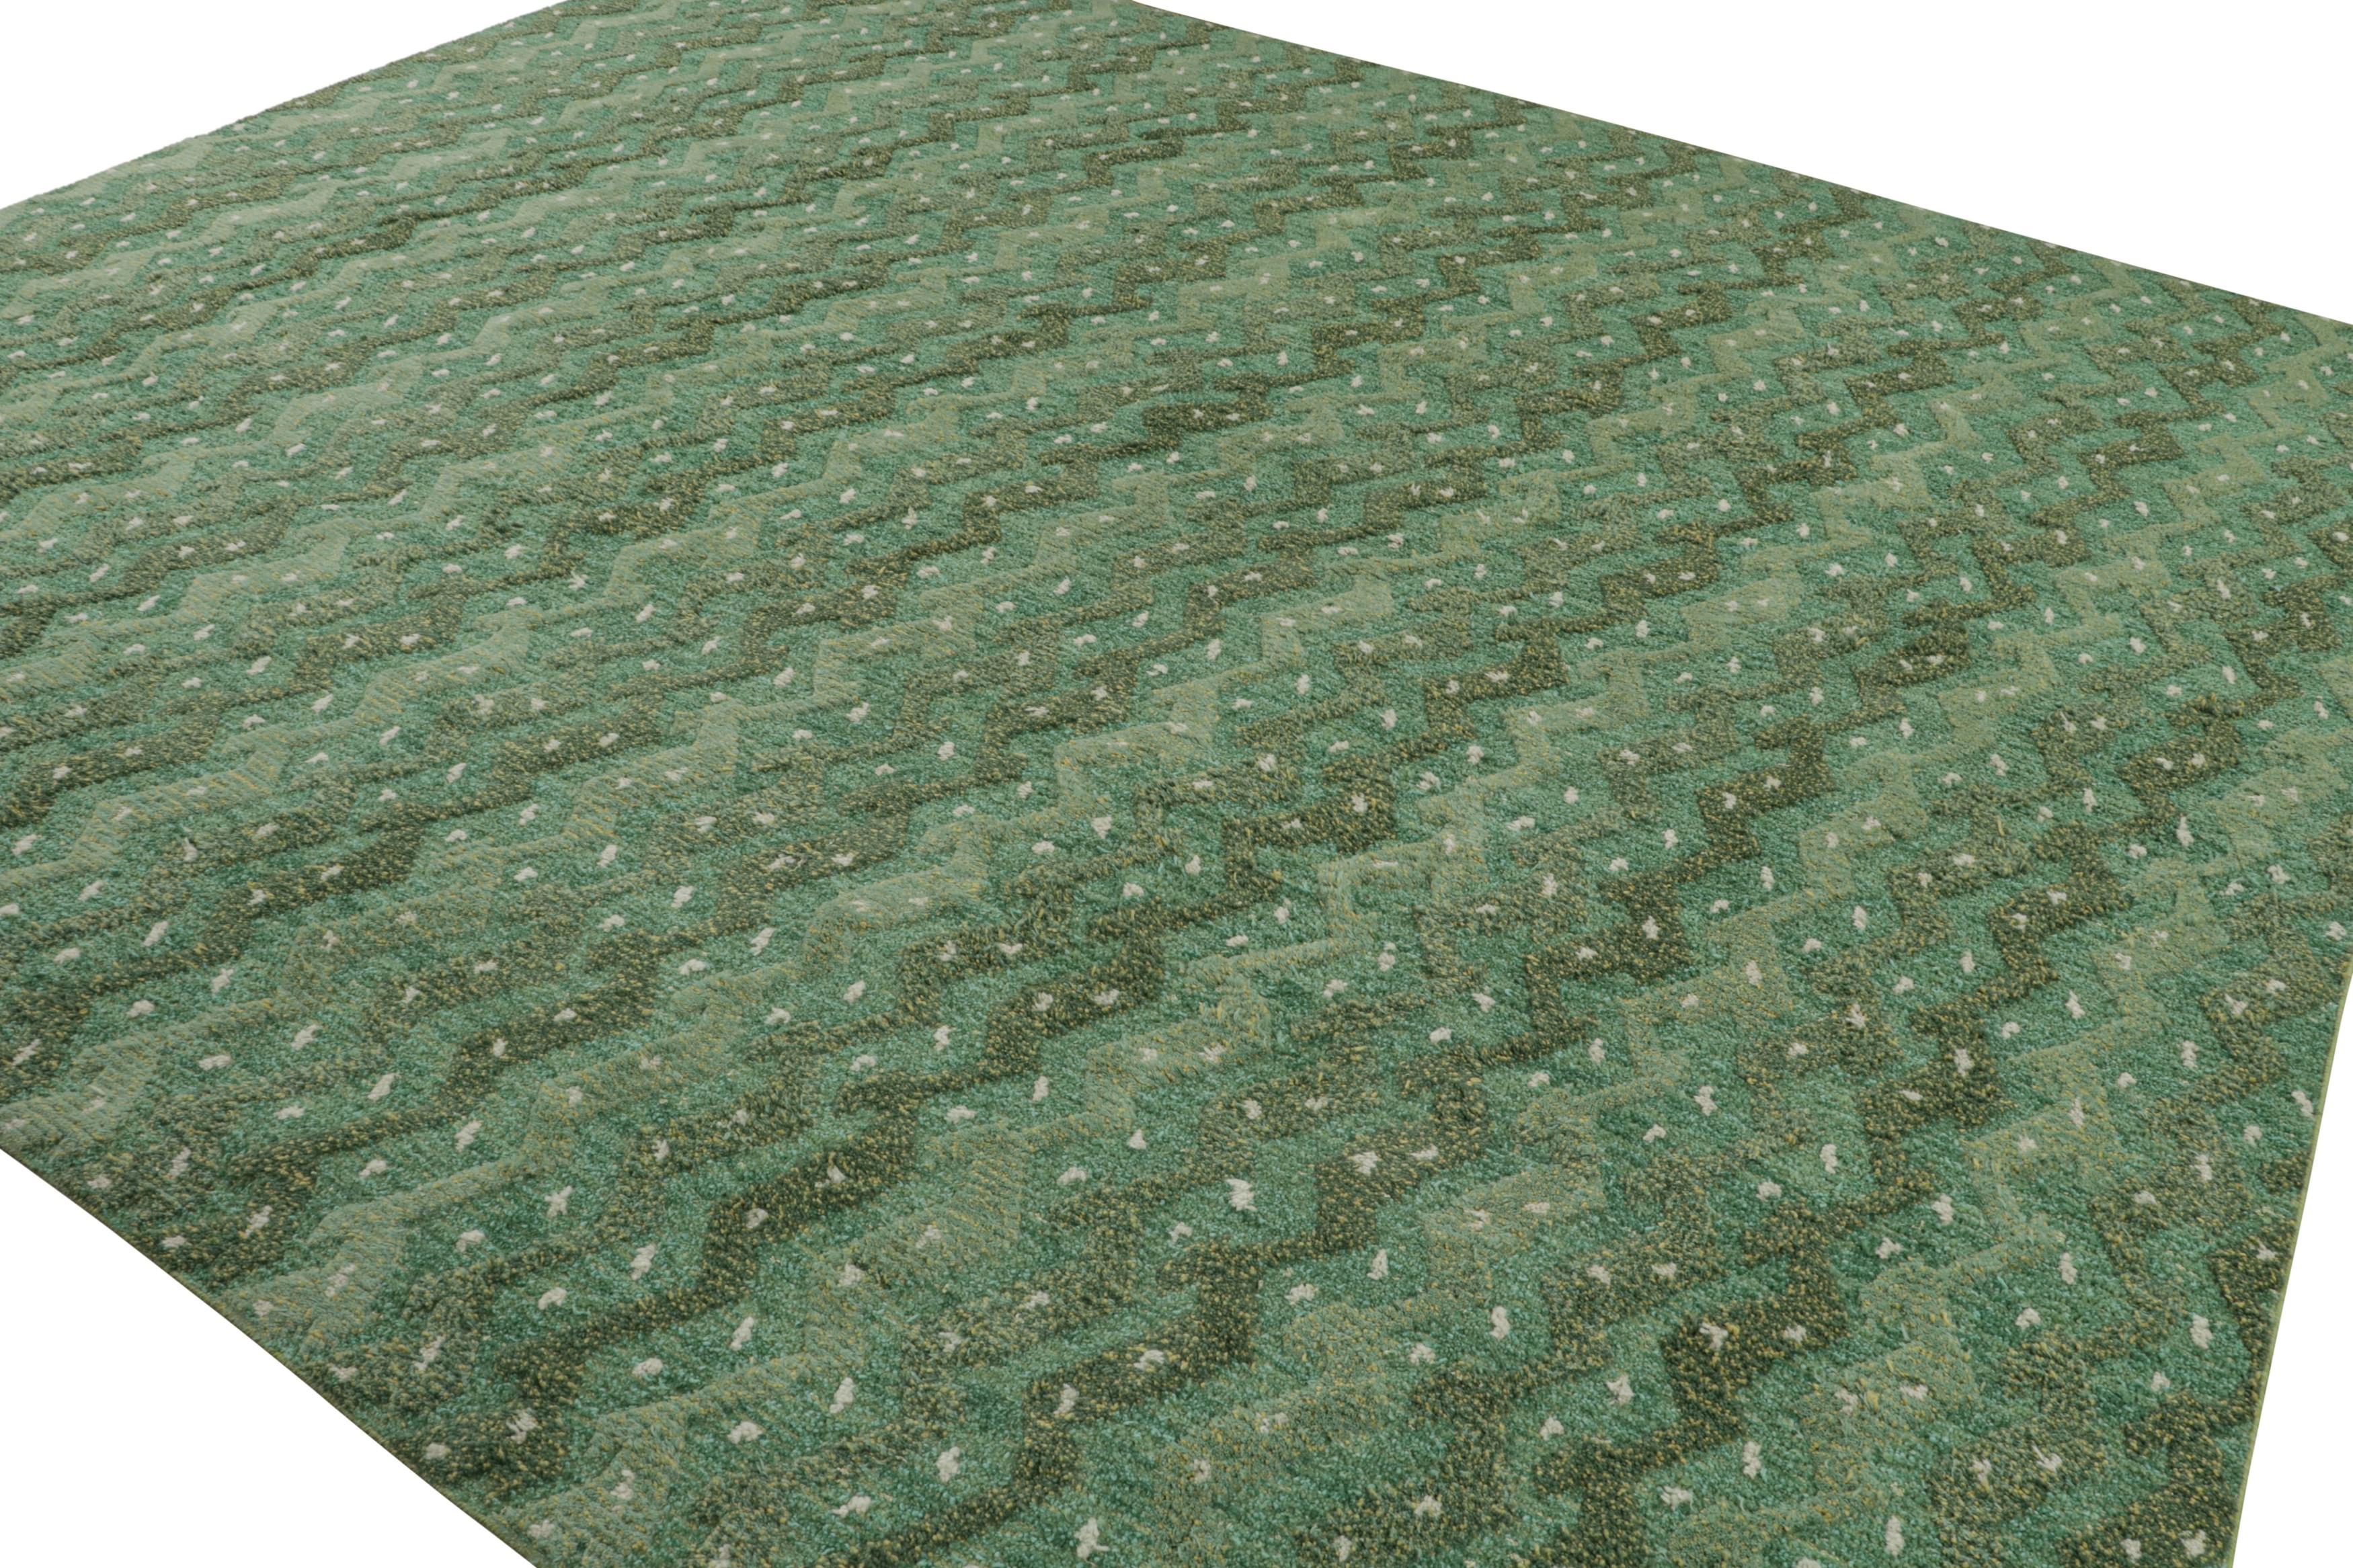 Dieser handgeknüpfte Wollteppich im Format 13x11 in Grün ist eine aufregende Neuheit in der skandinavischen Teppichkollektion von Rug & Kilim.

Über das Design: 

Dieses Design erfreut sich reicher Juwelentöne, Salbei- und Chartreuse-Grün